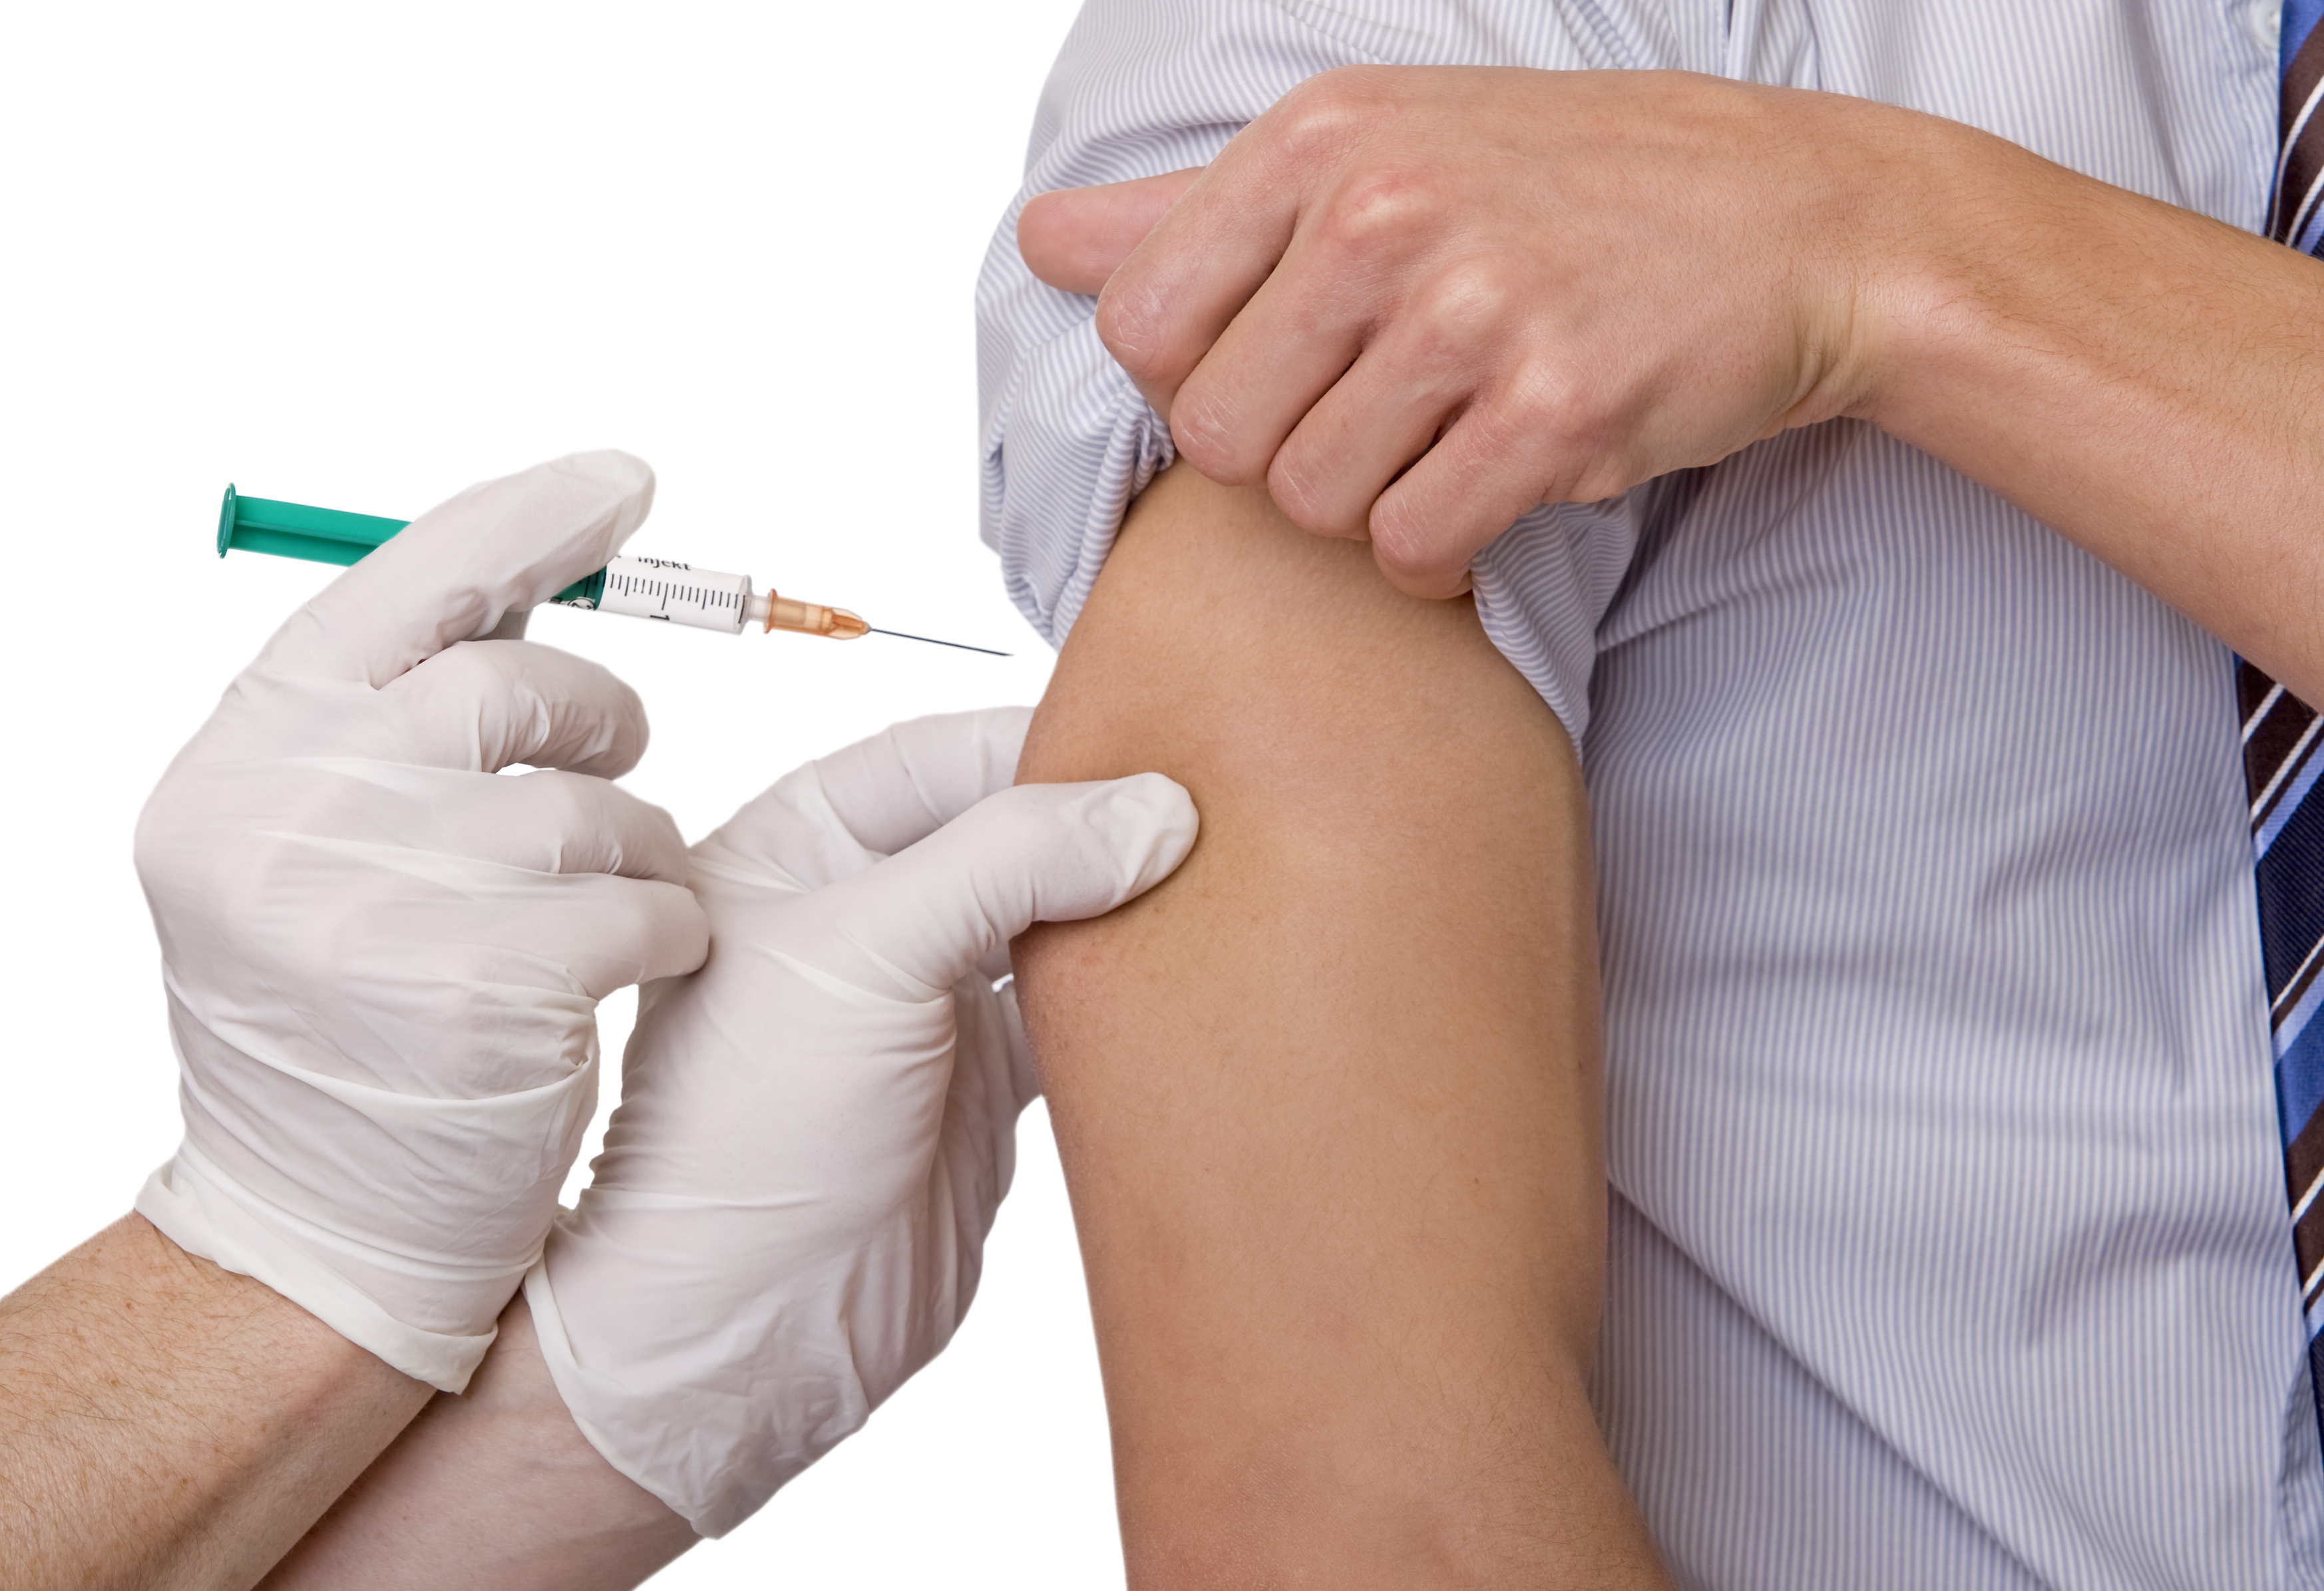 Vaksine settes i armen.